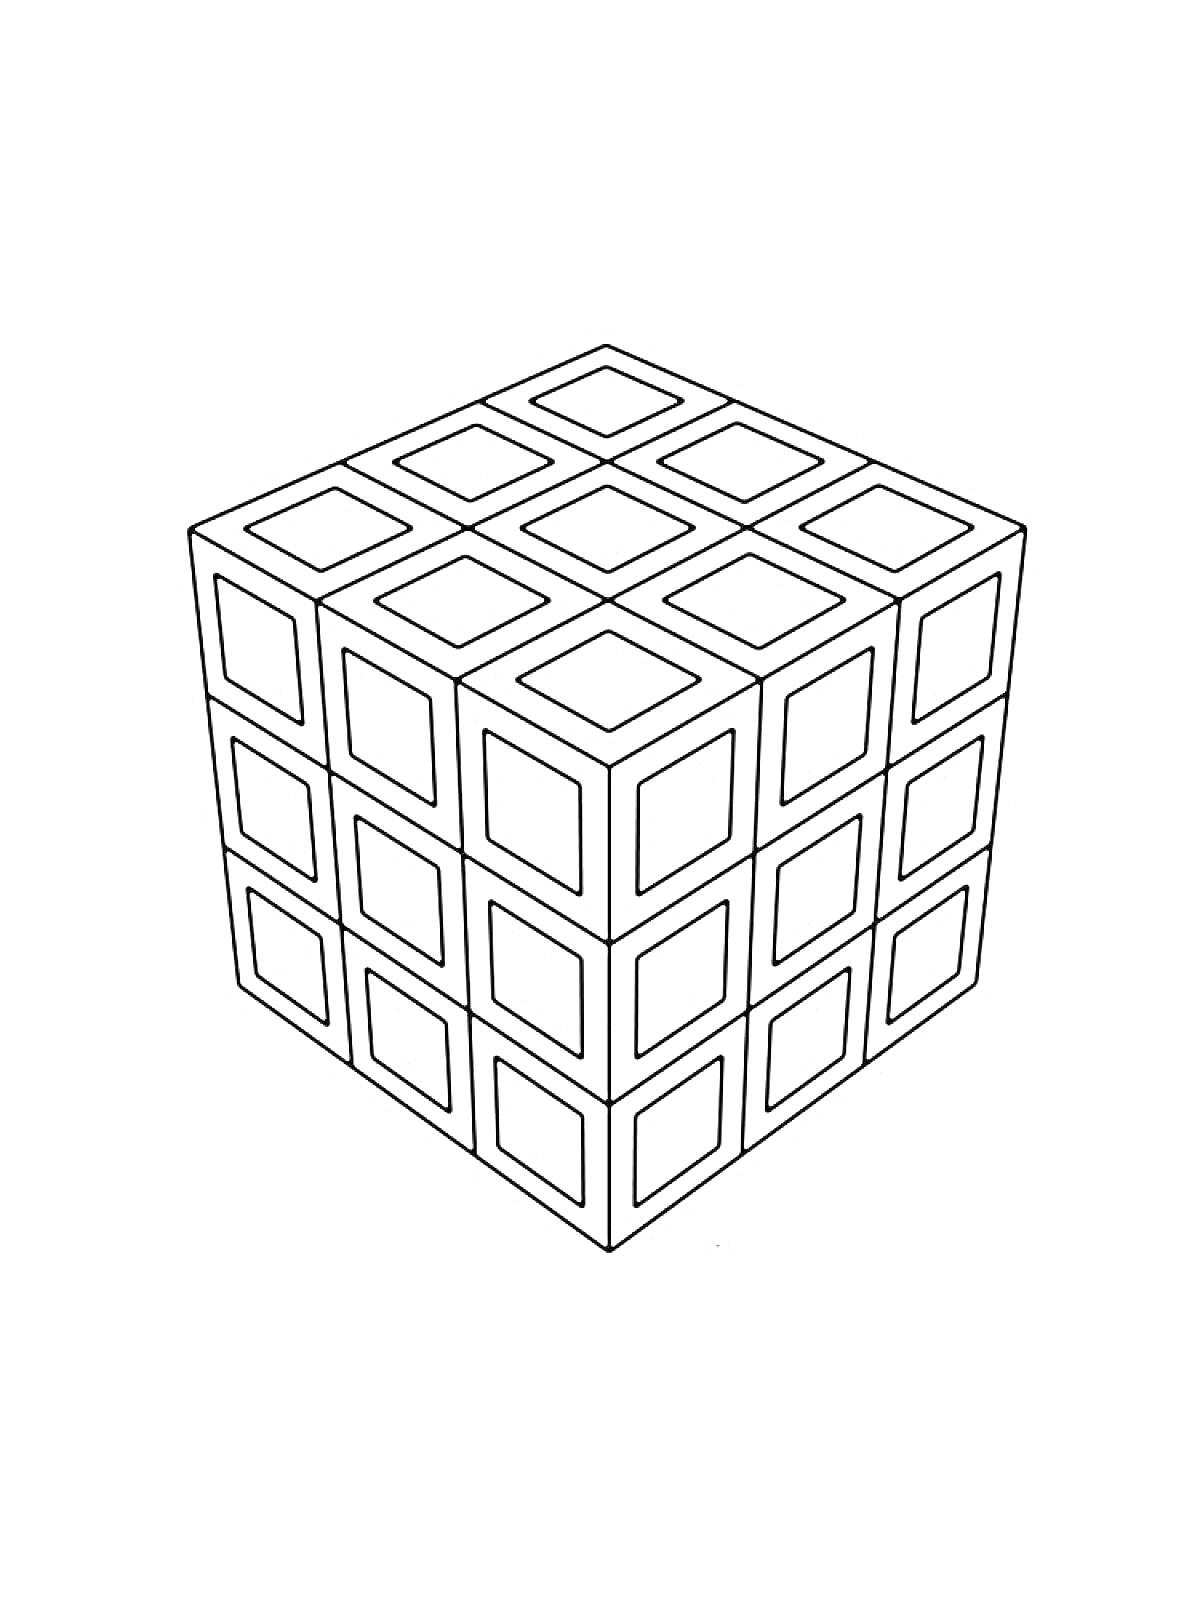 Кубик Рубика с видимыми тремя гранями и девятью элементами на каждой грани